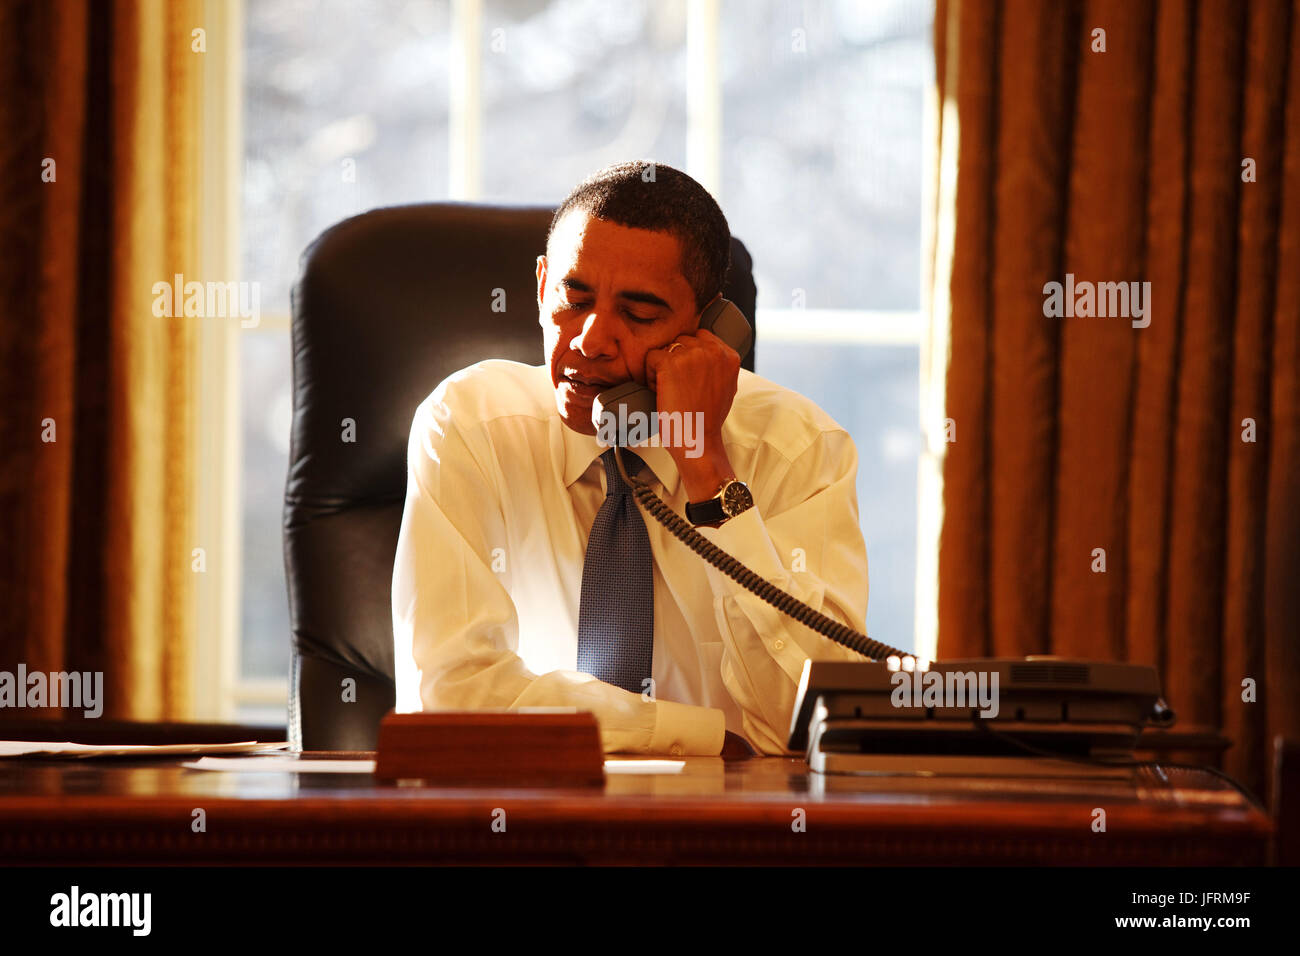 Le président Barack Obama parle avec un dirigeant étranger dans le bureau ovale pour son premier jour au pouvoir 21/01/09. Photo Officiel de la Maison Blanche par Pete Souza Banque D'Images